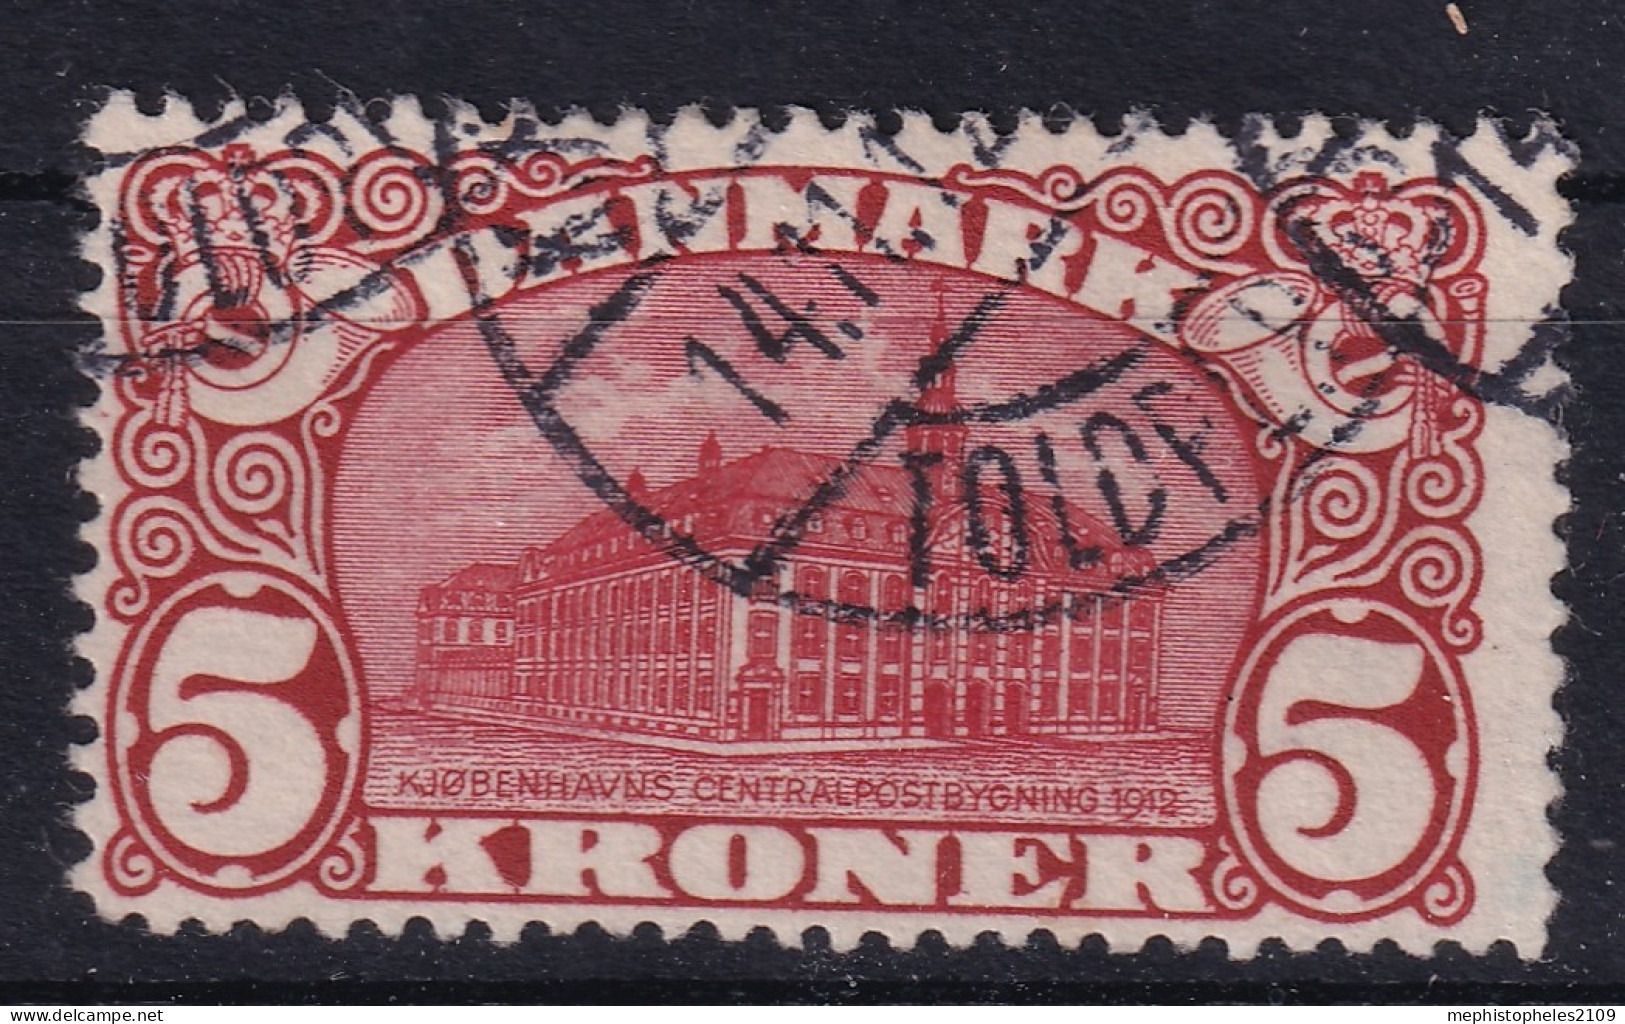 DENMARK 1912 - Canceled - Sc# 82 - Perf. 13 - Usado